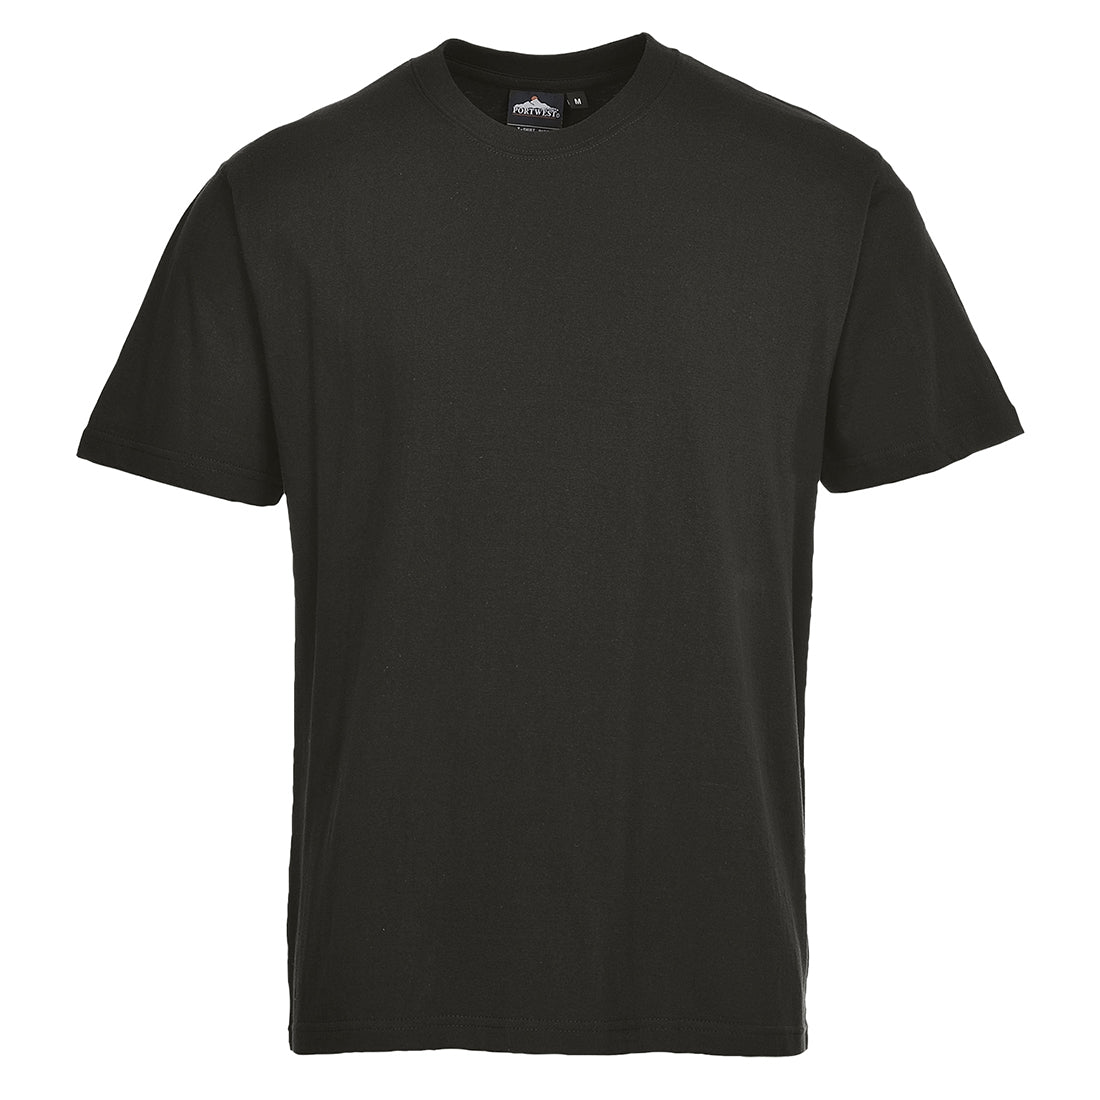 Portwest Workwear B195 - Turin Premium T-Shirt Black s-3xl